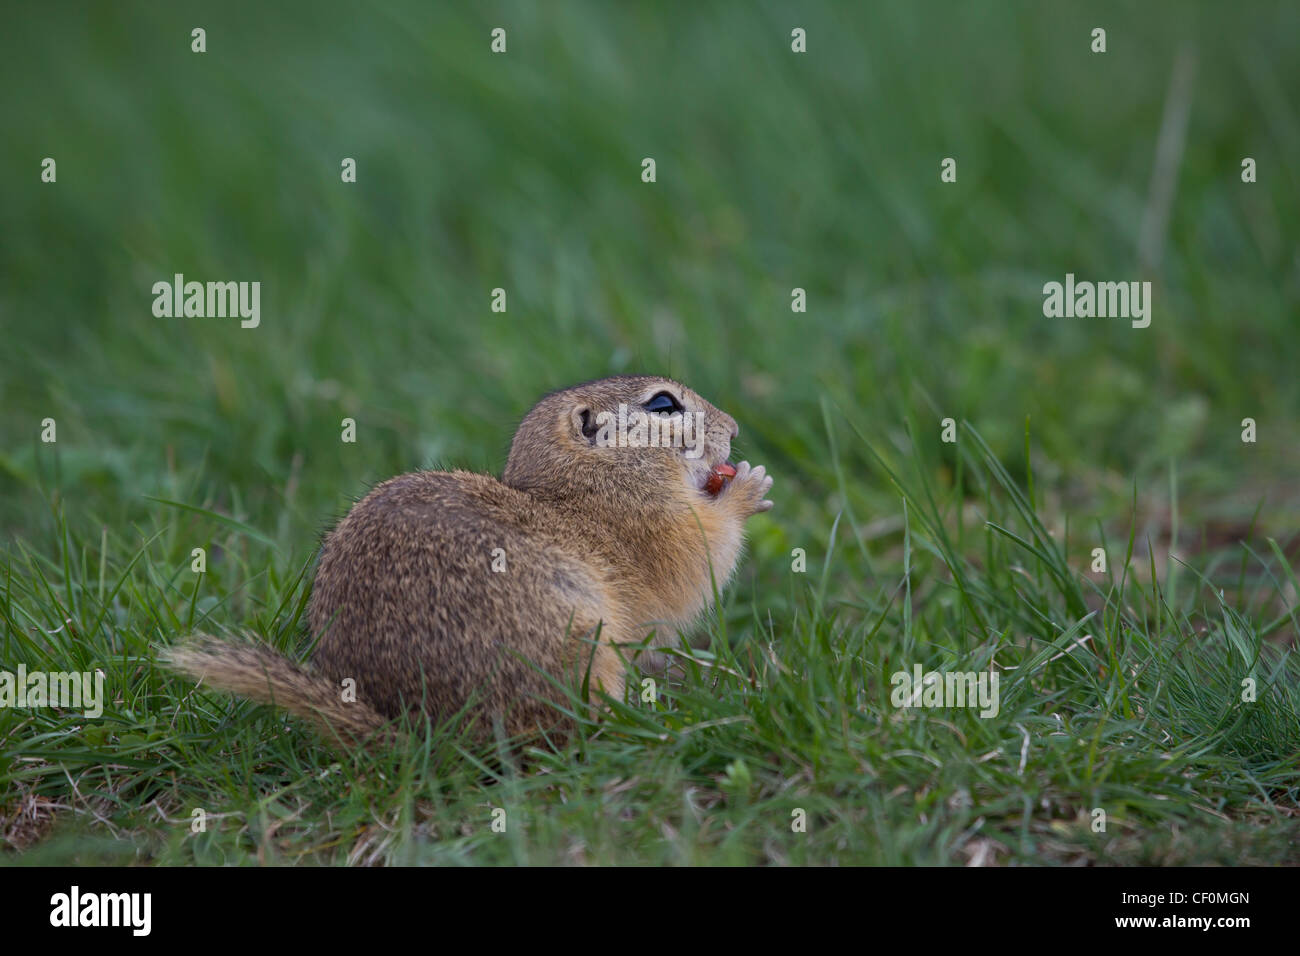 Ziesel, Spermophilus, Syn.: Citellus, ground squirrel Stock Photo